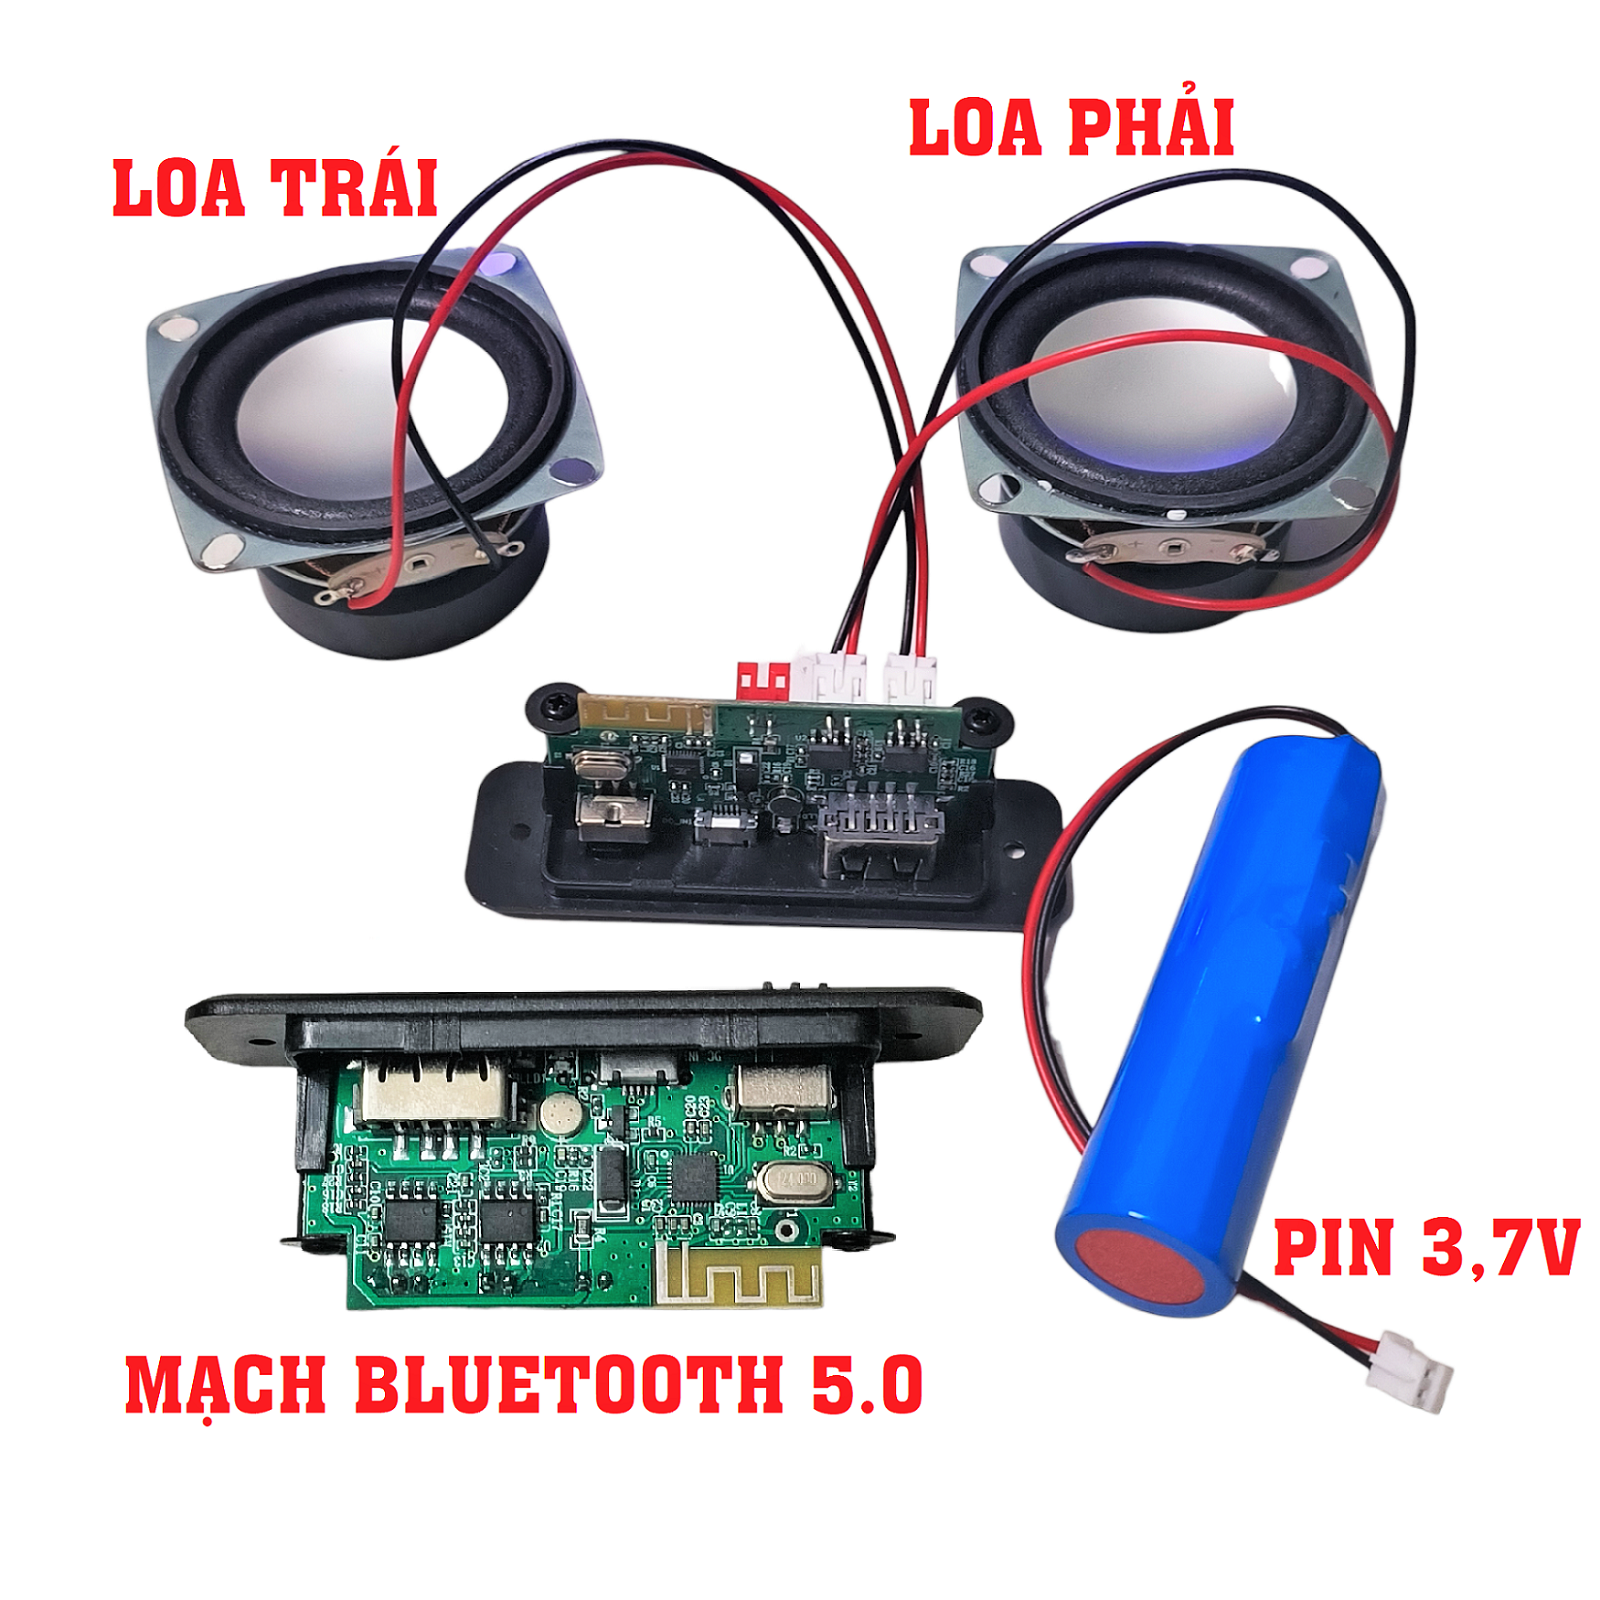 Combo Mạch loa bluetooth 5.0 + 2 Loa + Pin. Đủ đồ nghề cho ae chế loa Bluetooth, chất âm nghe hay Siêu đỉnh luôn - Điện tử hồng uyên